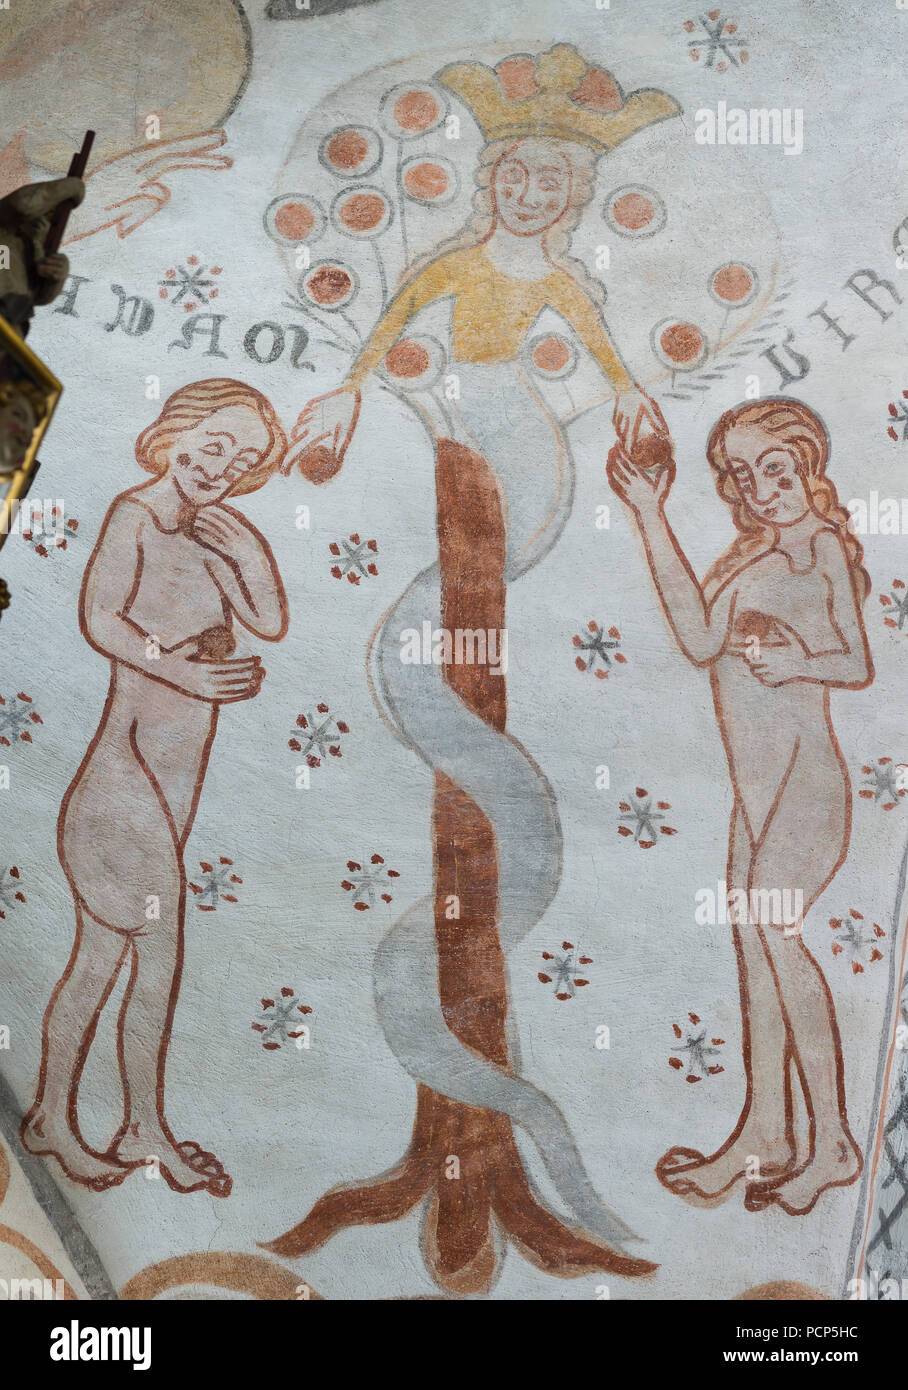 La chute de l'homme dans le jardin du paradis. Le serpent donne le fruit défendu à Adam et Eve. Église Kirkerup , le Danemark, le 3 juillet 2018 Banque D'Images